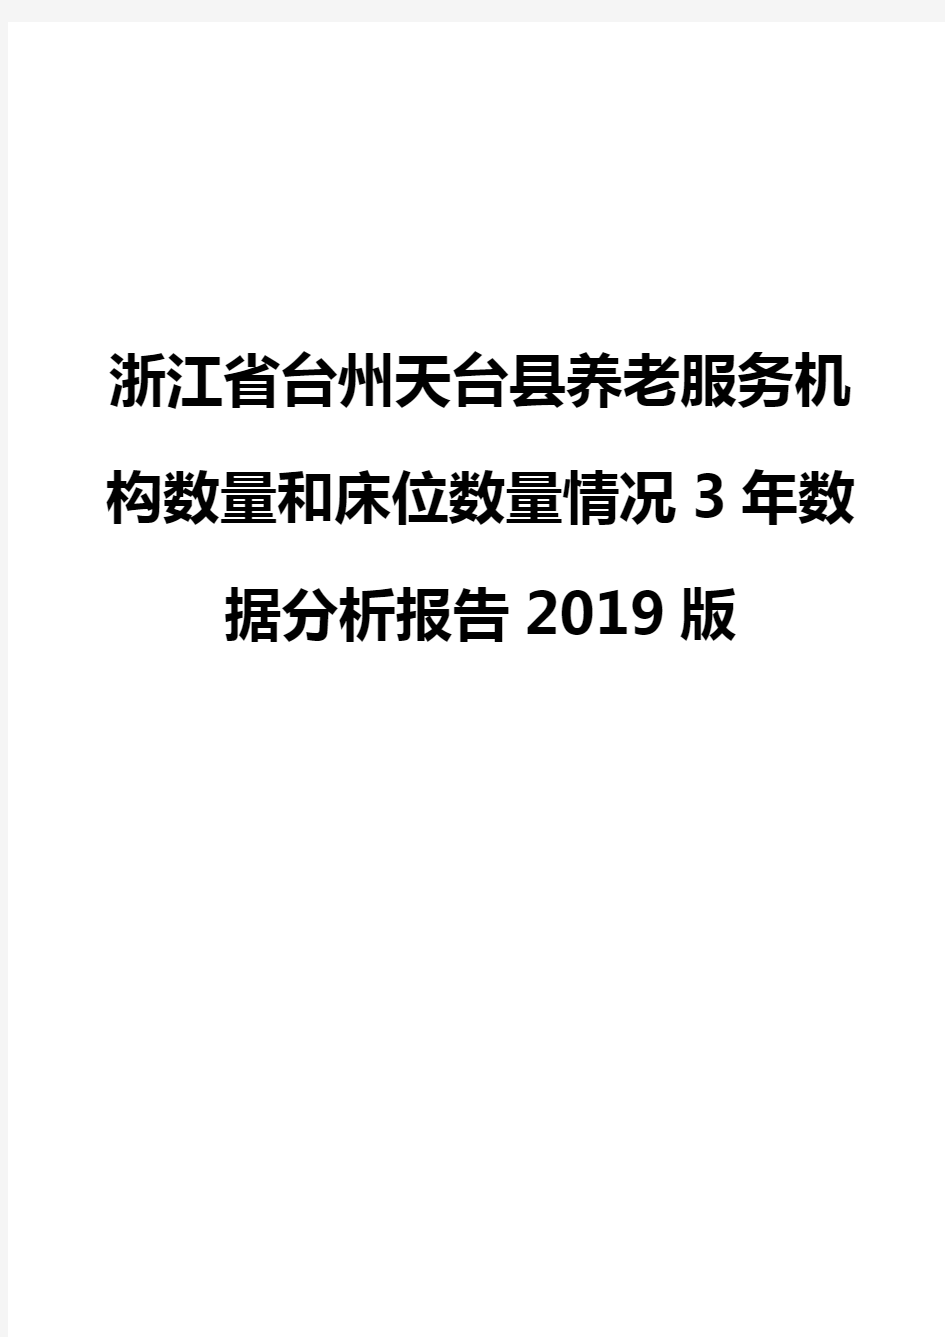 浙江省台州天台县养老服务机构数量和床位数量情况3年数据分析报告2019版